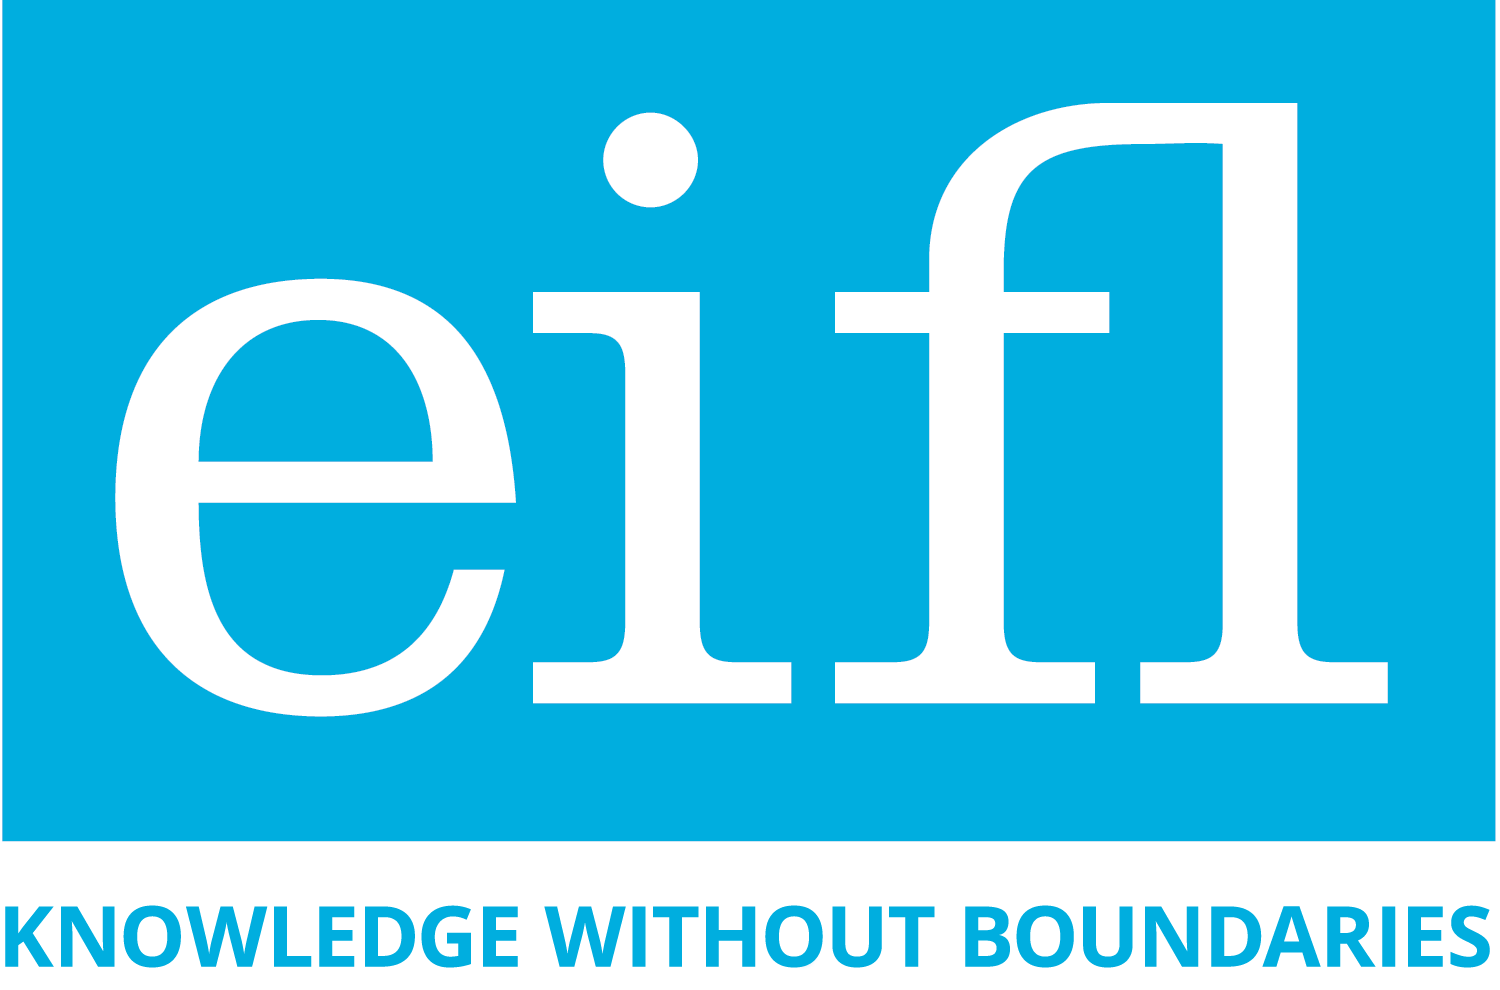 ინფორმაცია Eifl-ის გამომცემლობებისა და ჟურნალების შესახებ